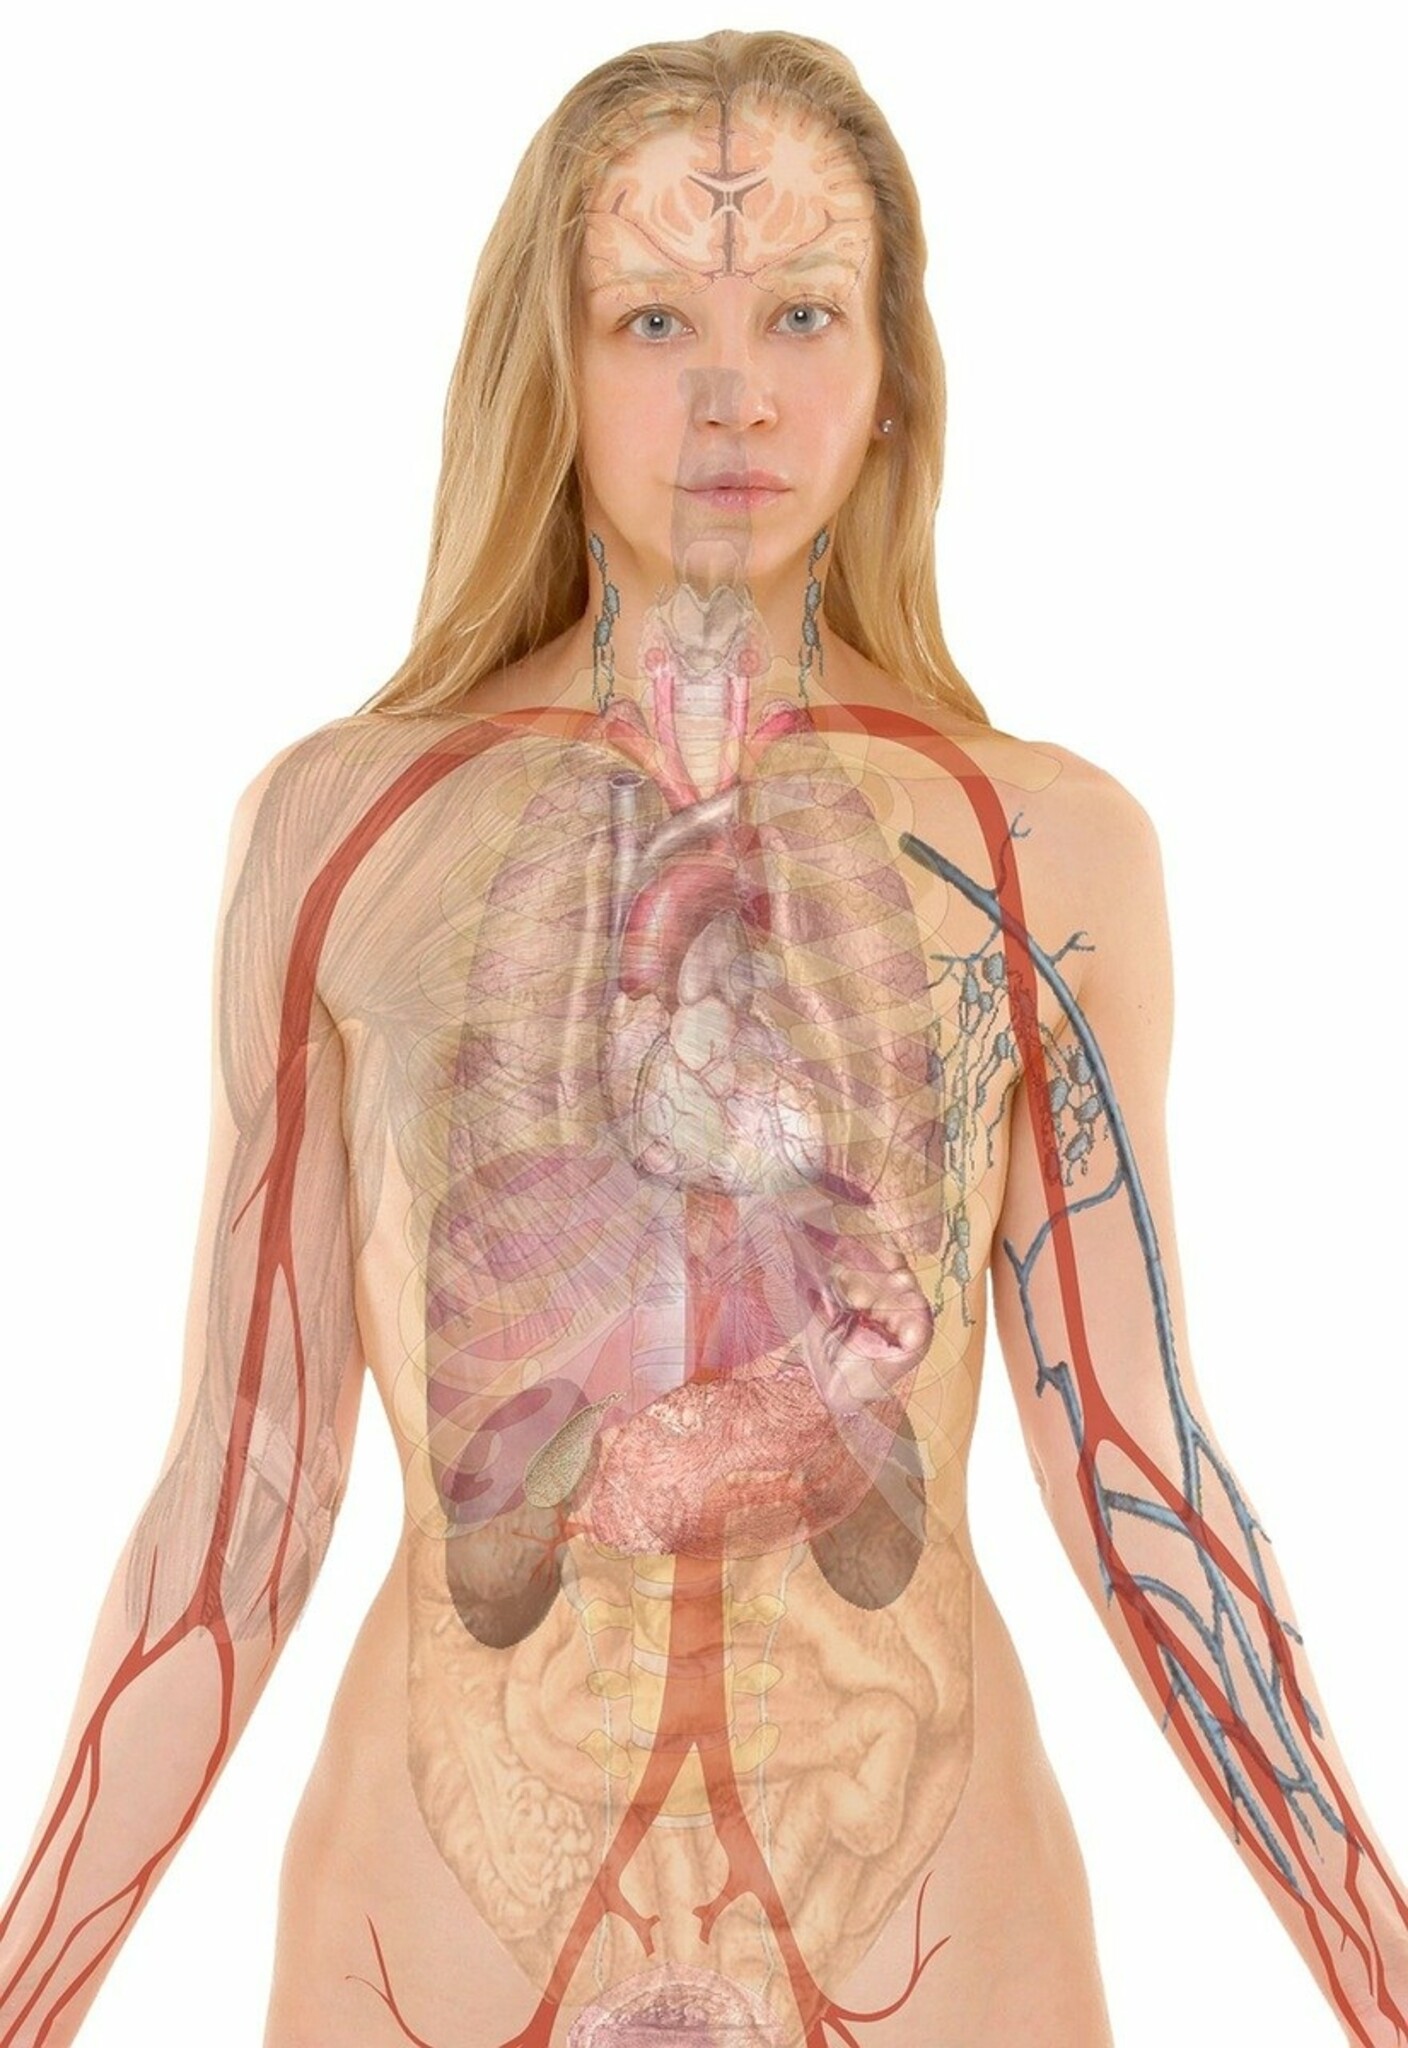 Bildüberblendung der Anatomie des Oberkörpers einer Frau